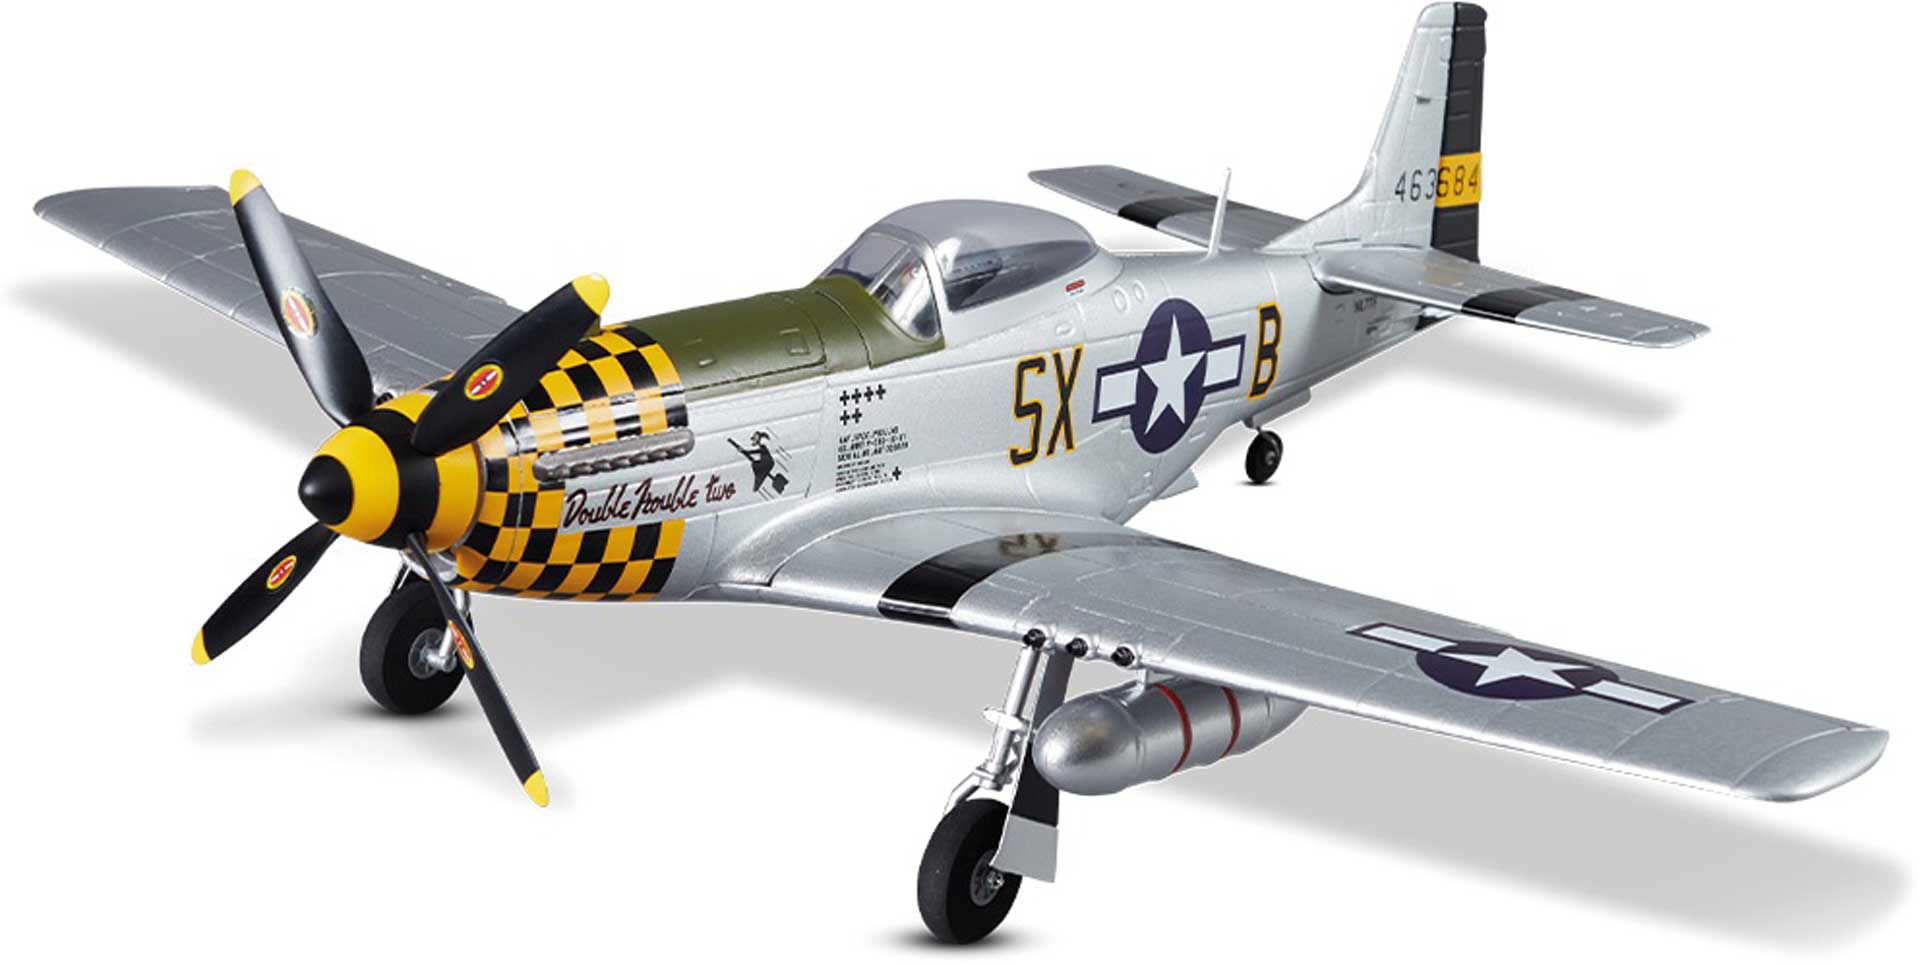 DERBEE P-51D Mustang Warbird PNP yellow - 75cm